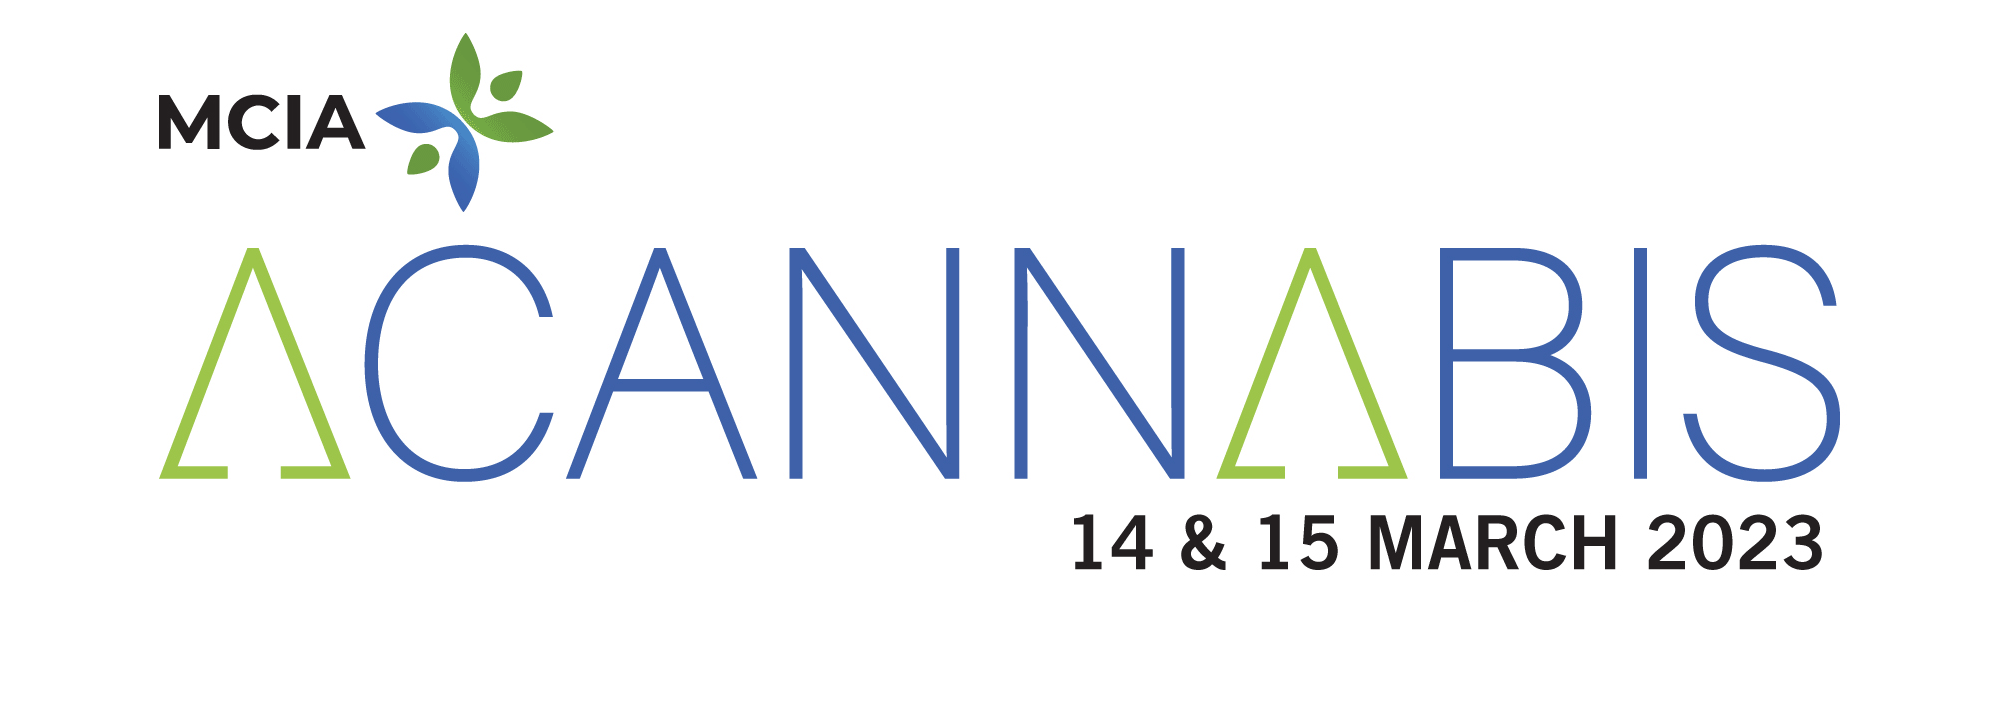 ACannabis 2023 (logo)